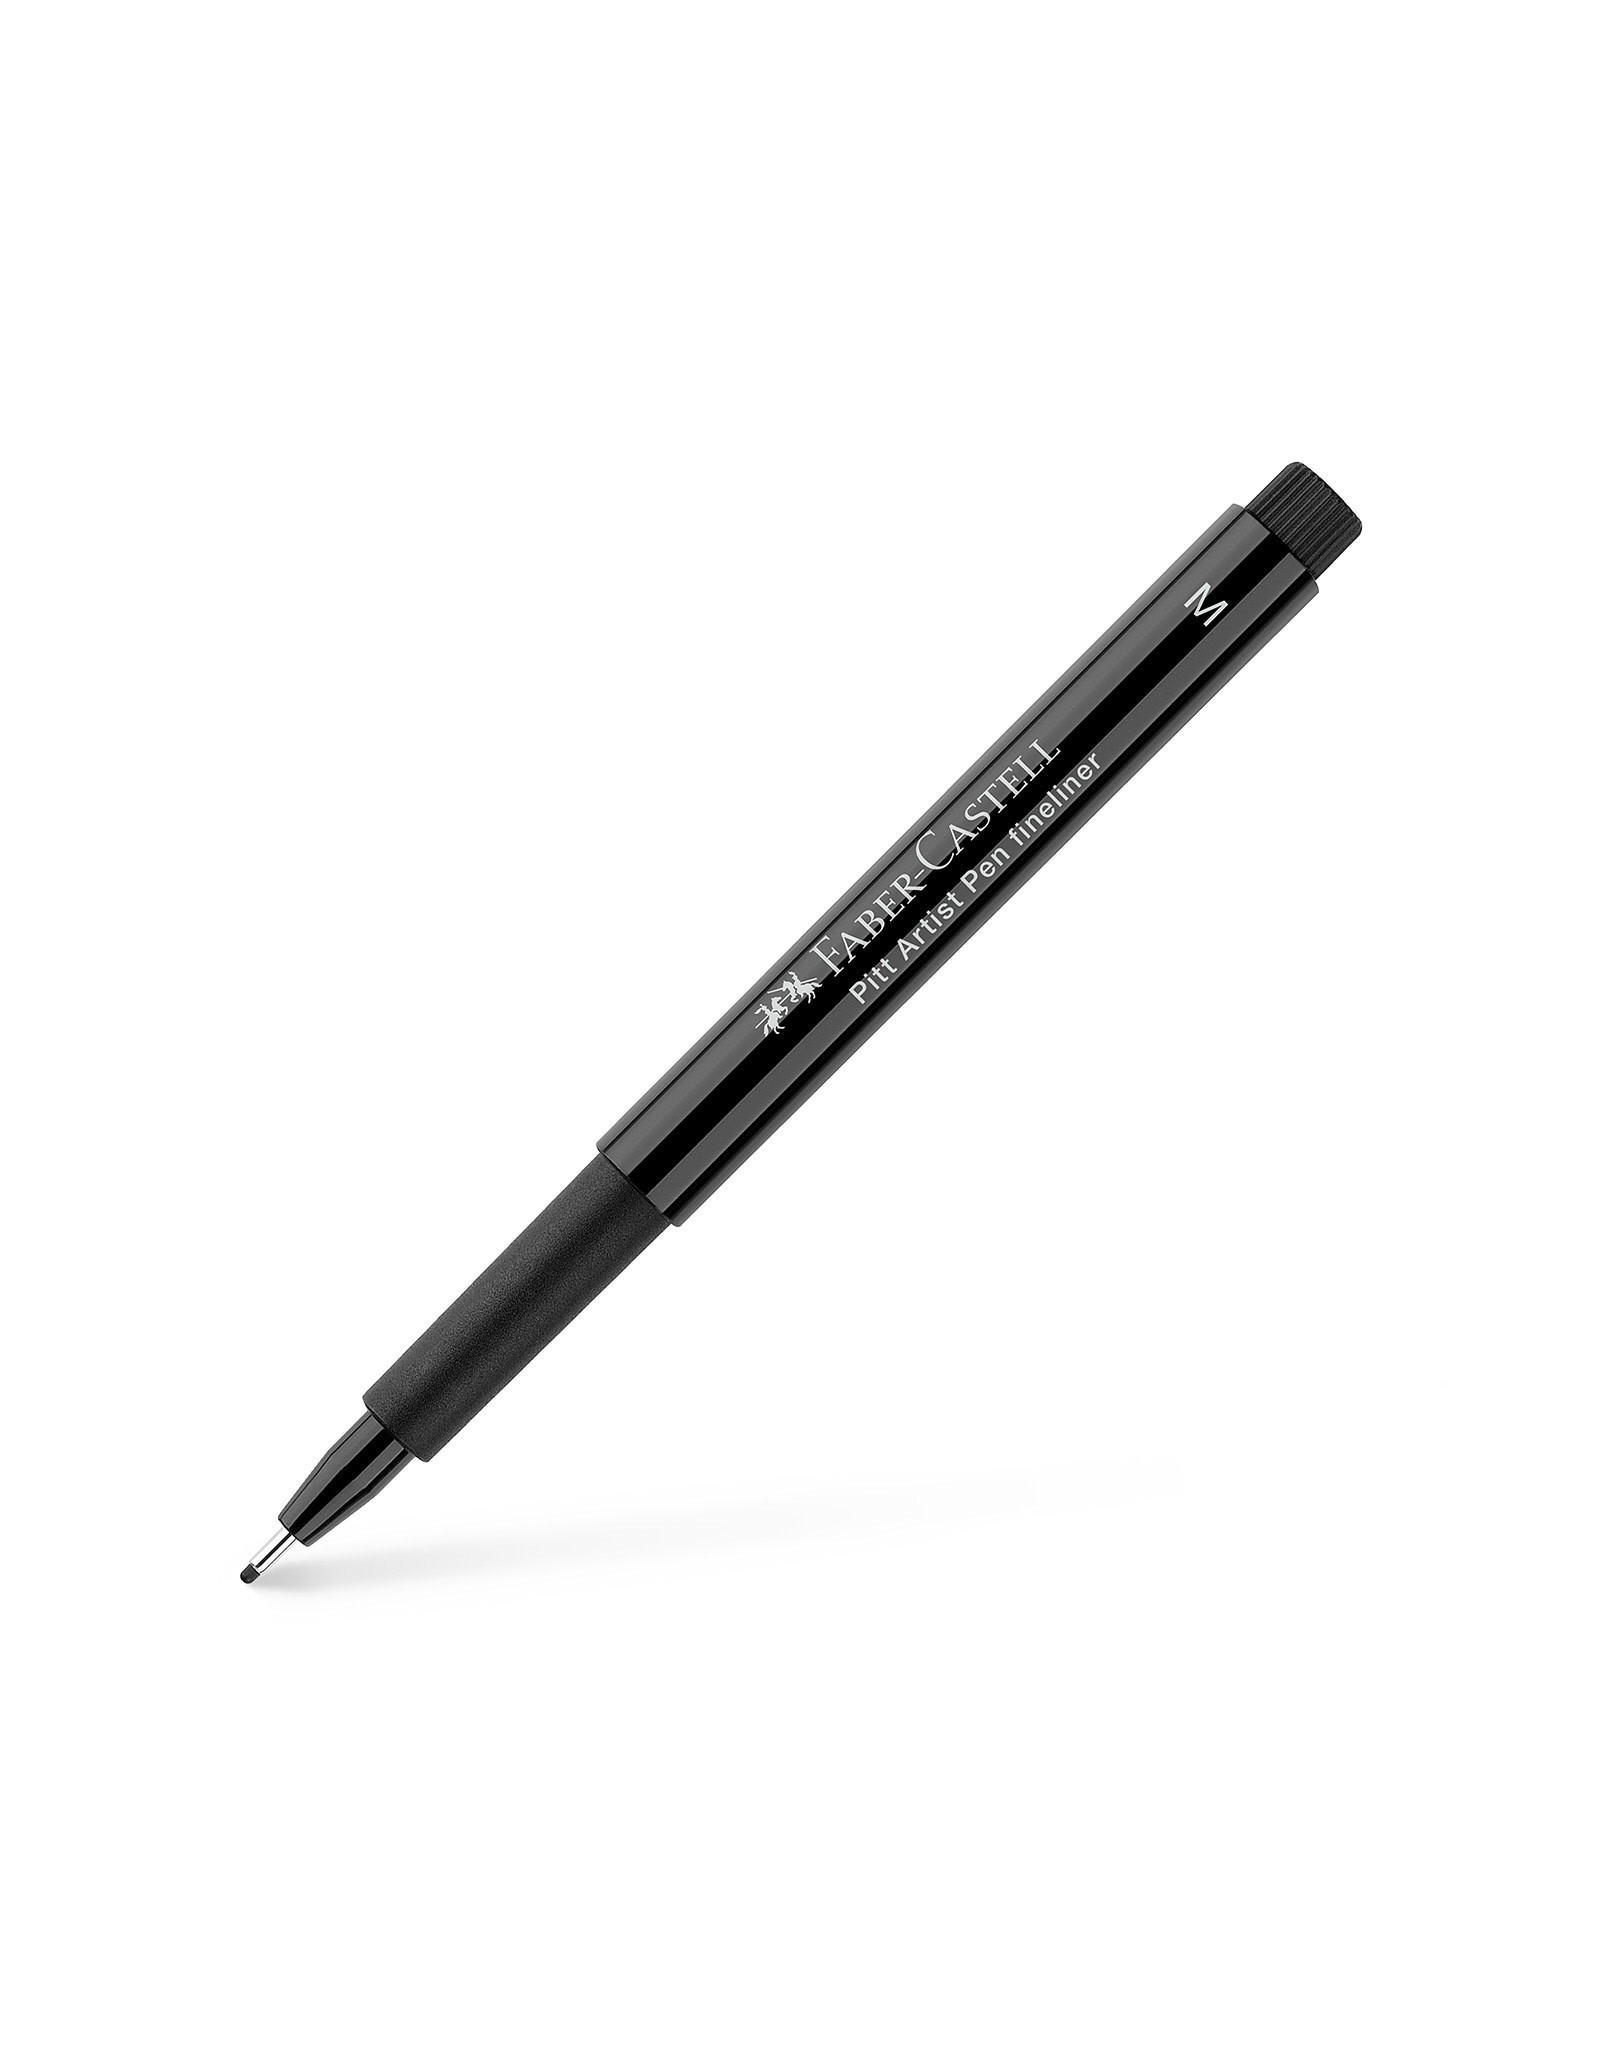 FABER-CASTELL Pitt Artist Pen, Medium, Black